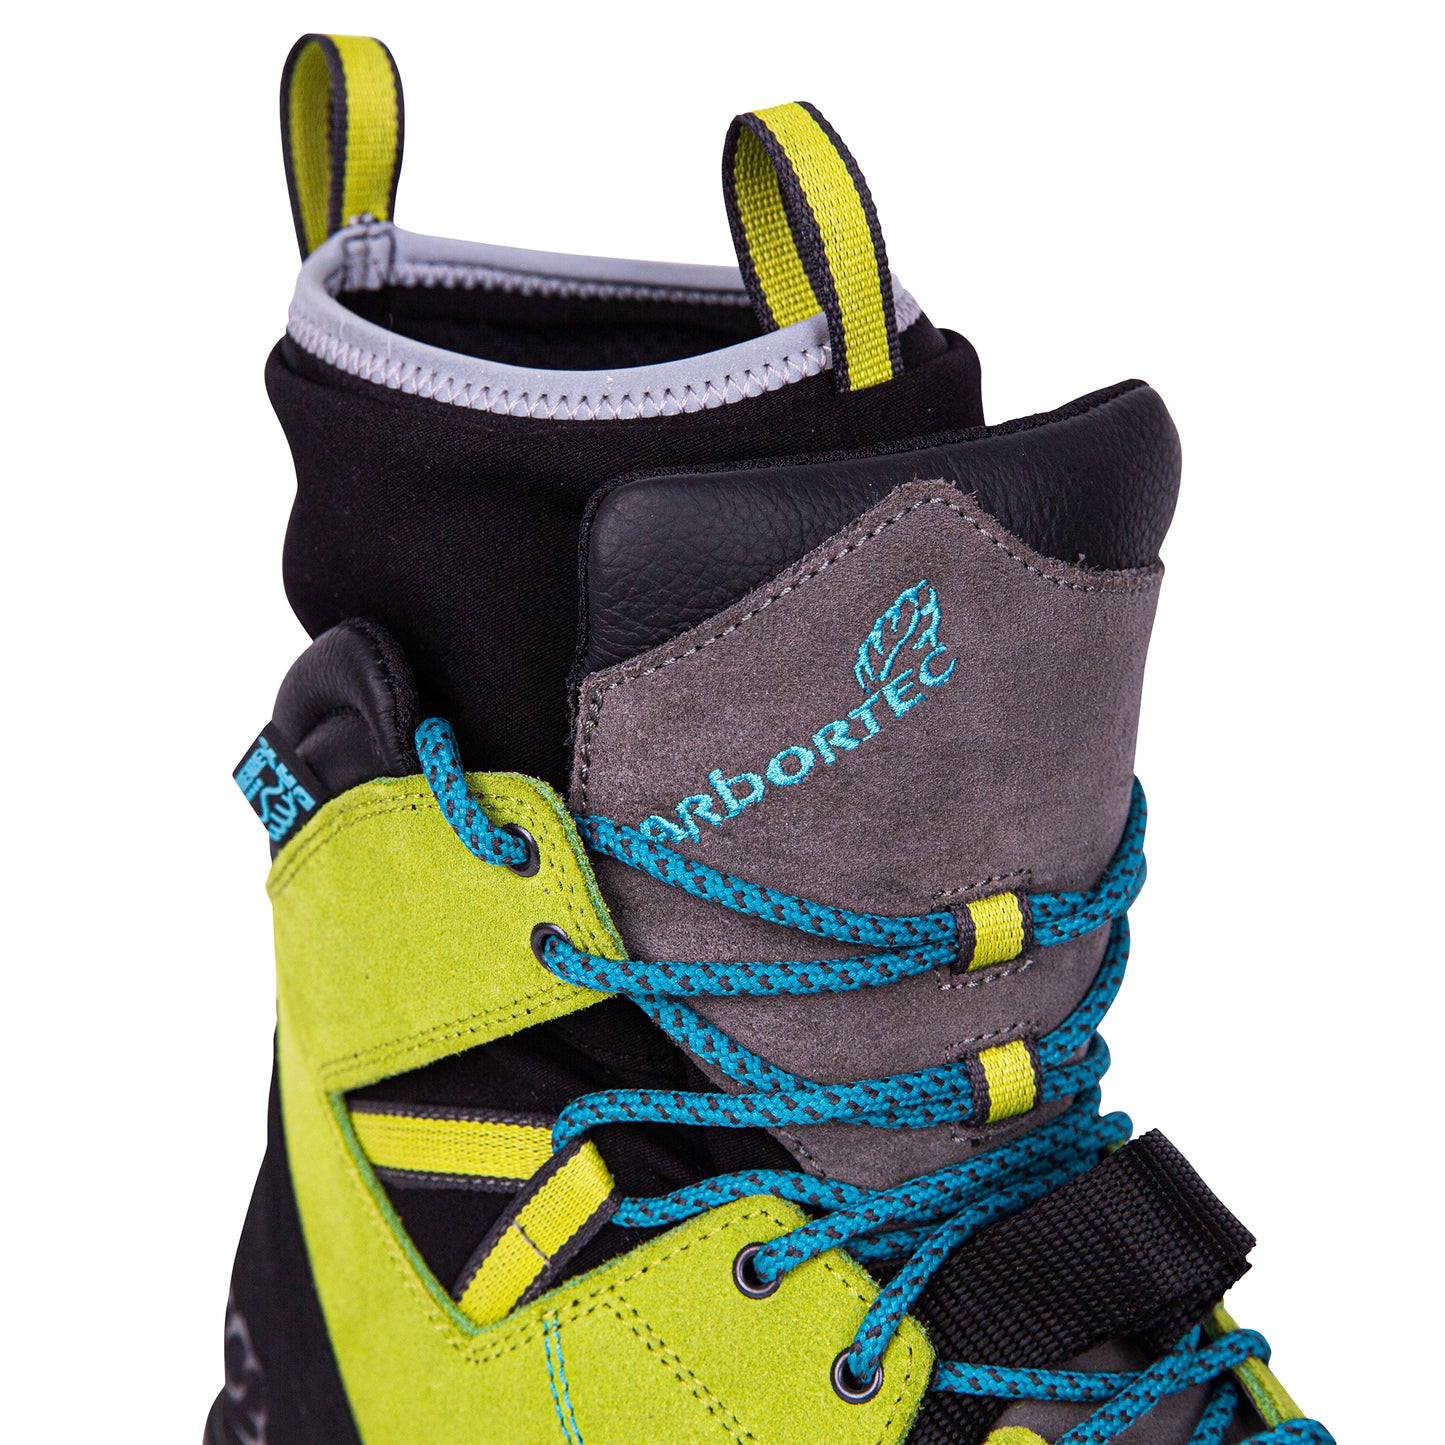 Arbortec Kayo Low-Cut Protective Climbing Boot